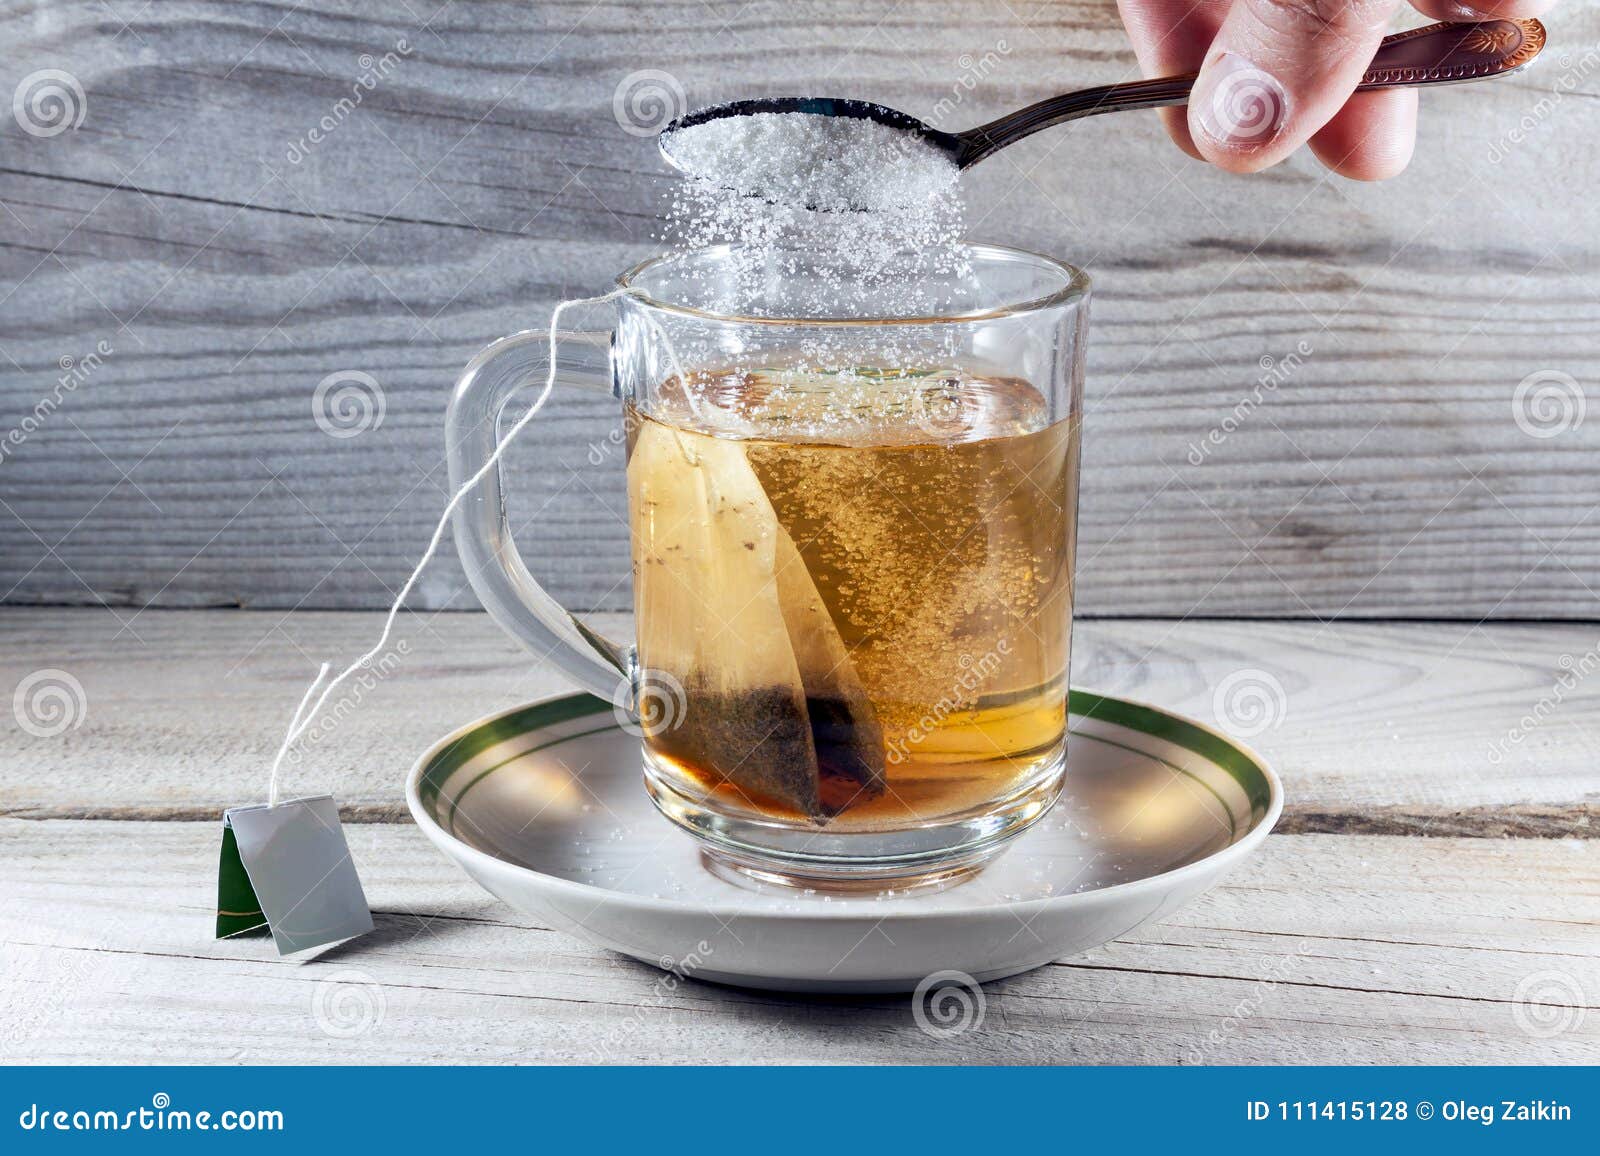 Почему в горячем чае кусочек сахара. Растворение сахара в чае. Растворение сахара в чаечб. Чайный пакетик в стакане. Чай с сахаром.